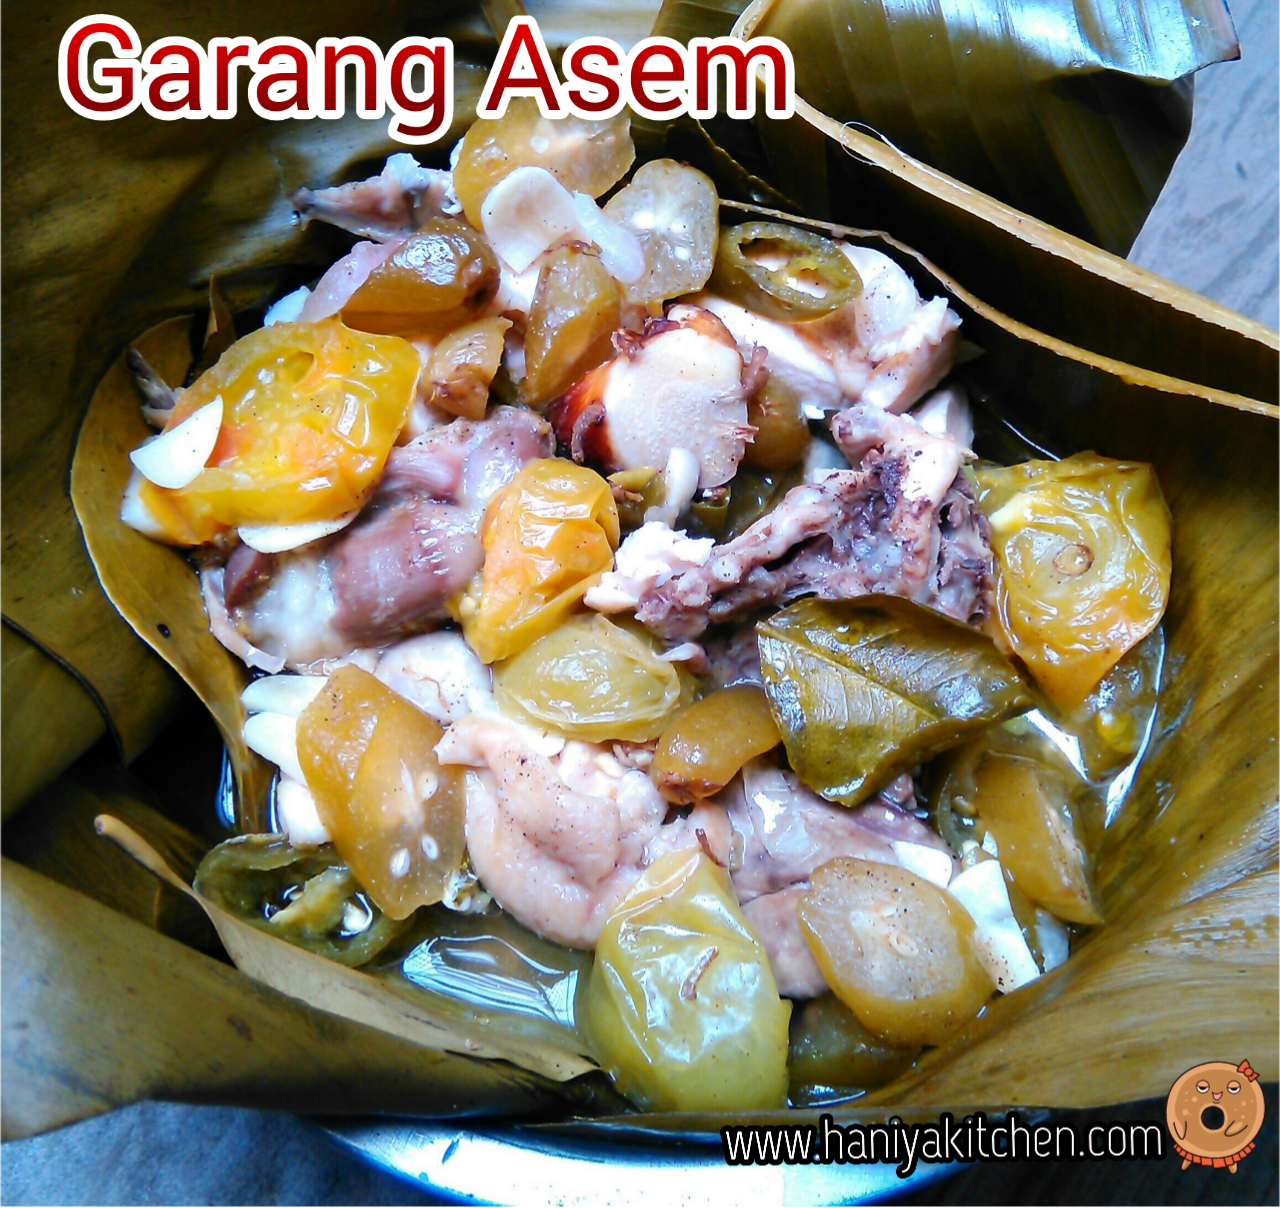 Resep Garang Asem Ayam Tanpa Daun Tanpa Santan - Garang Asem Ayam Resep Tastemade - Sudah jelas ...